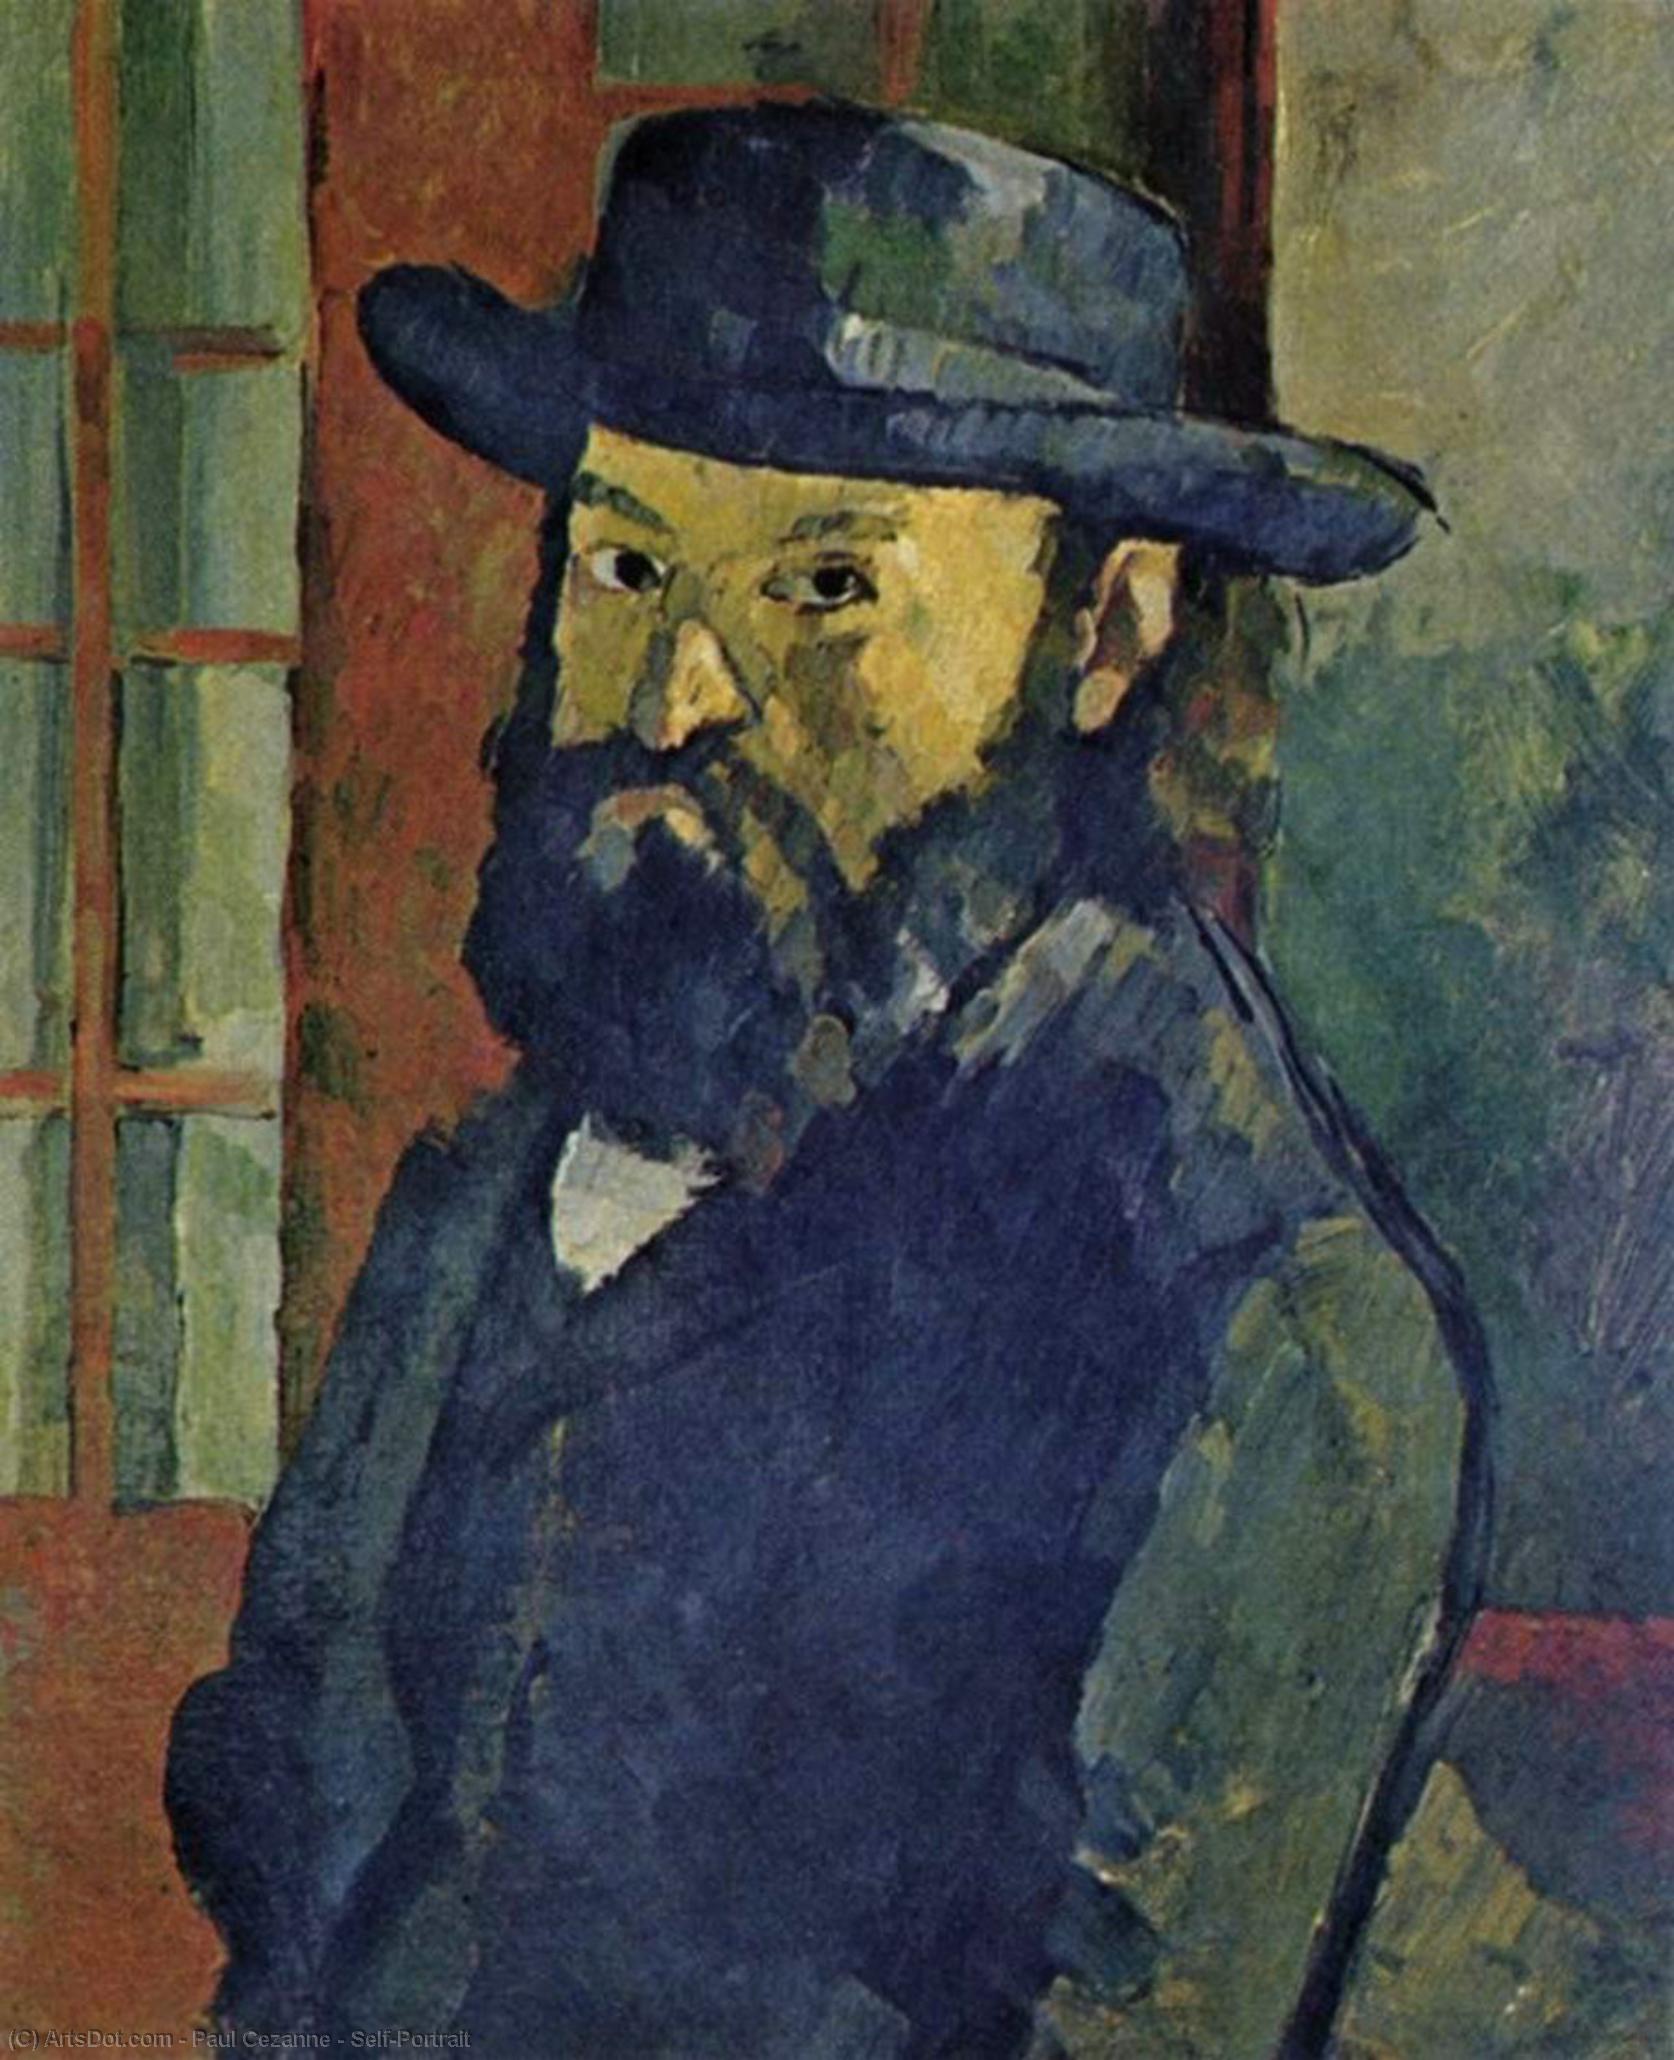 WikiOO.org - Encyclopedia of Fine Arts - Lukisan, Artwork Paul Cezanne - Self-Portrait